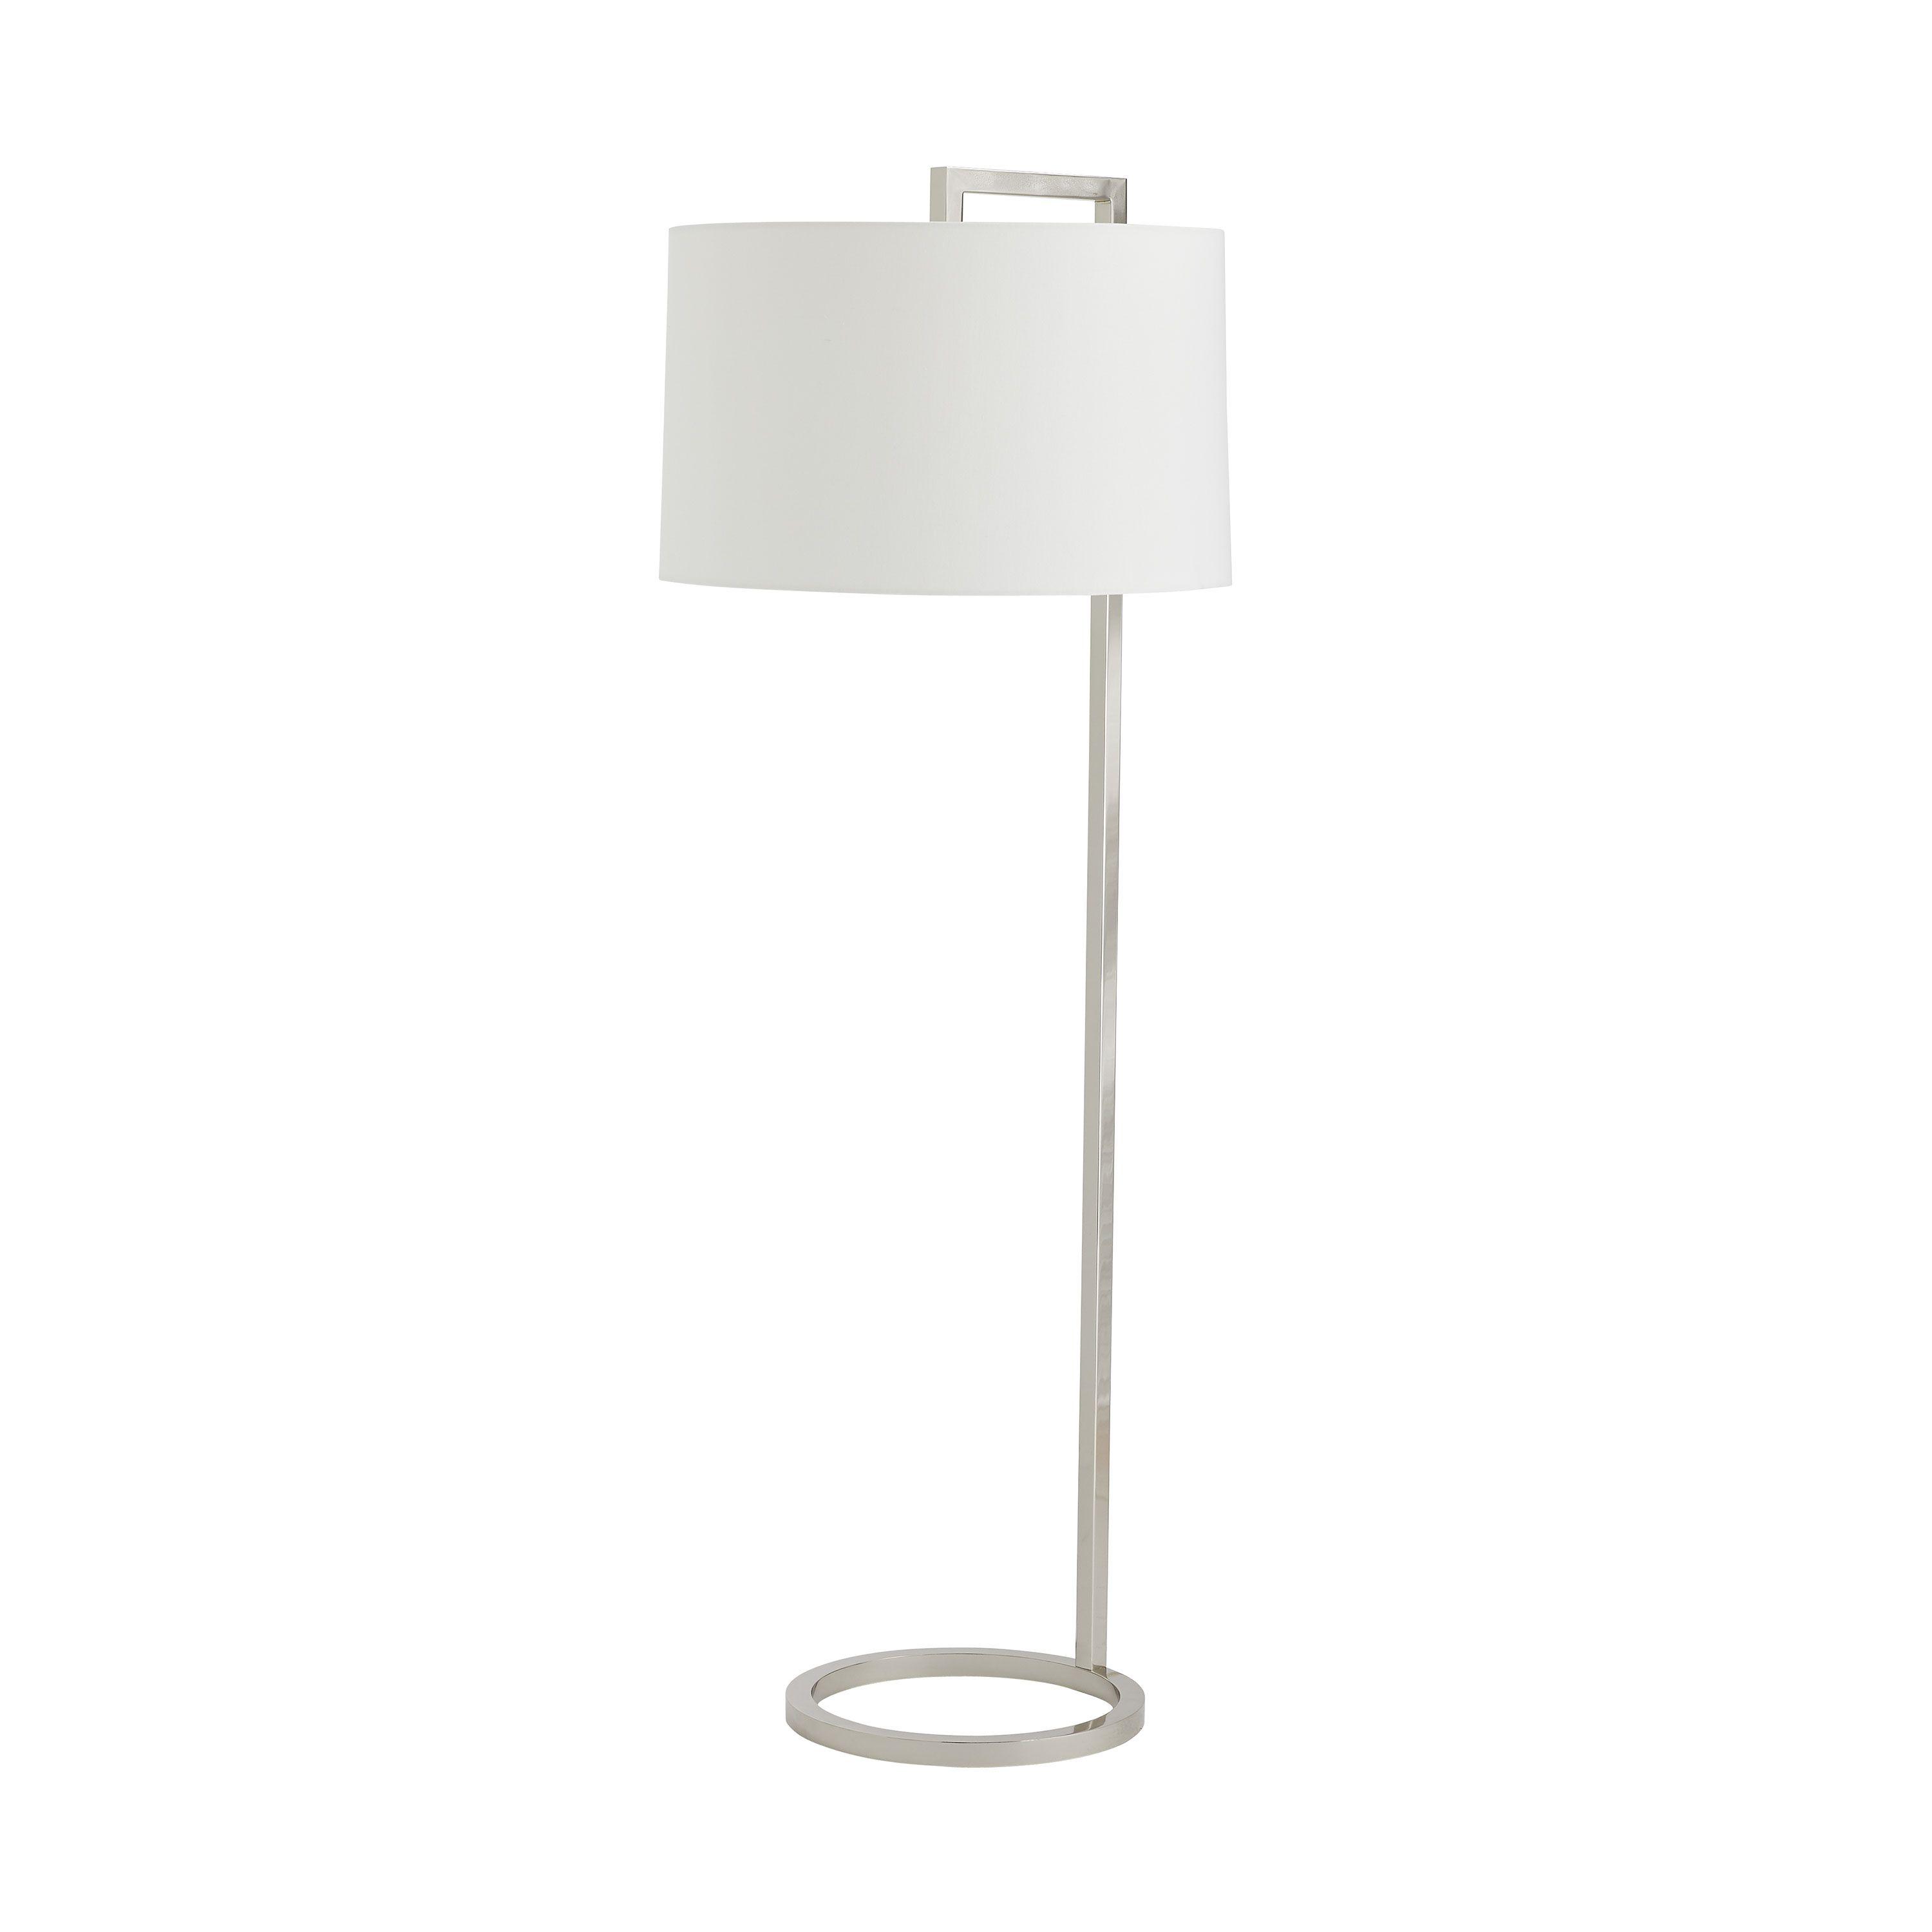 Купить Торшер Belden Floor Lamp в интернет-магазине roooms.ru